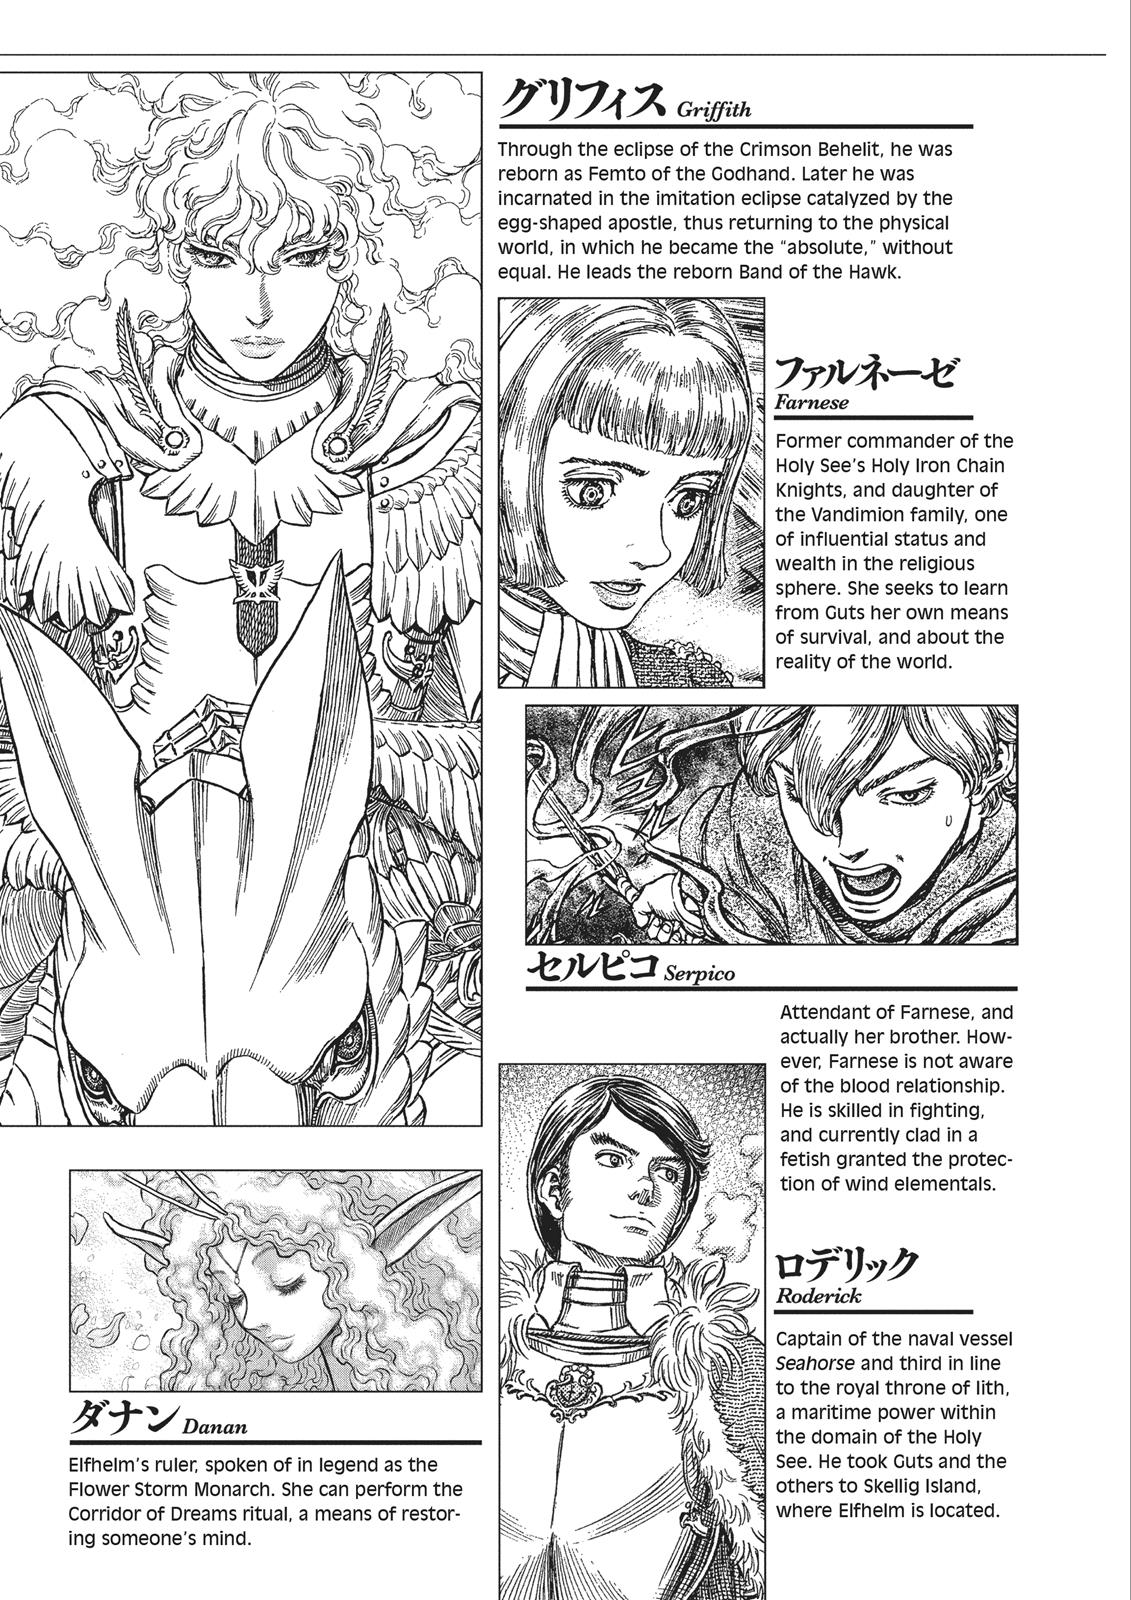 Berserk Manga Chapter 351 image 08